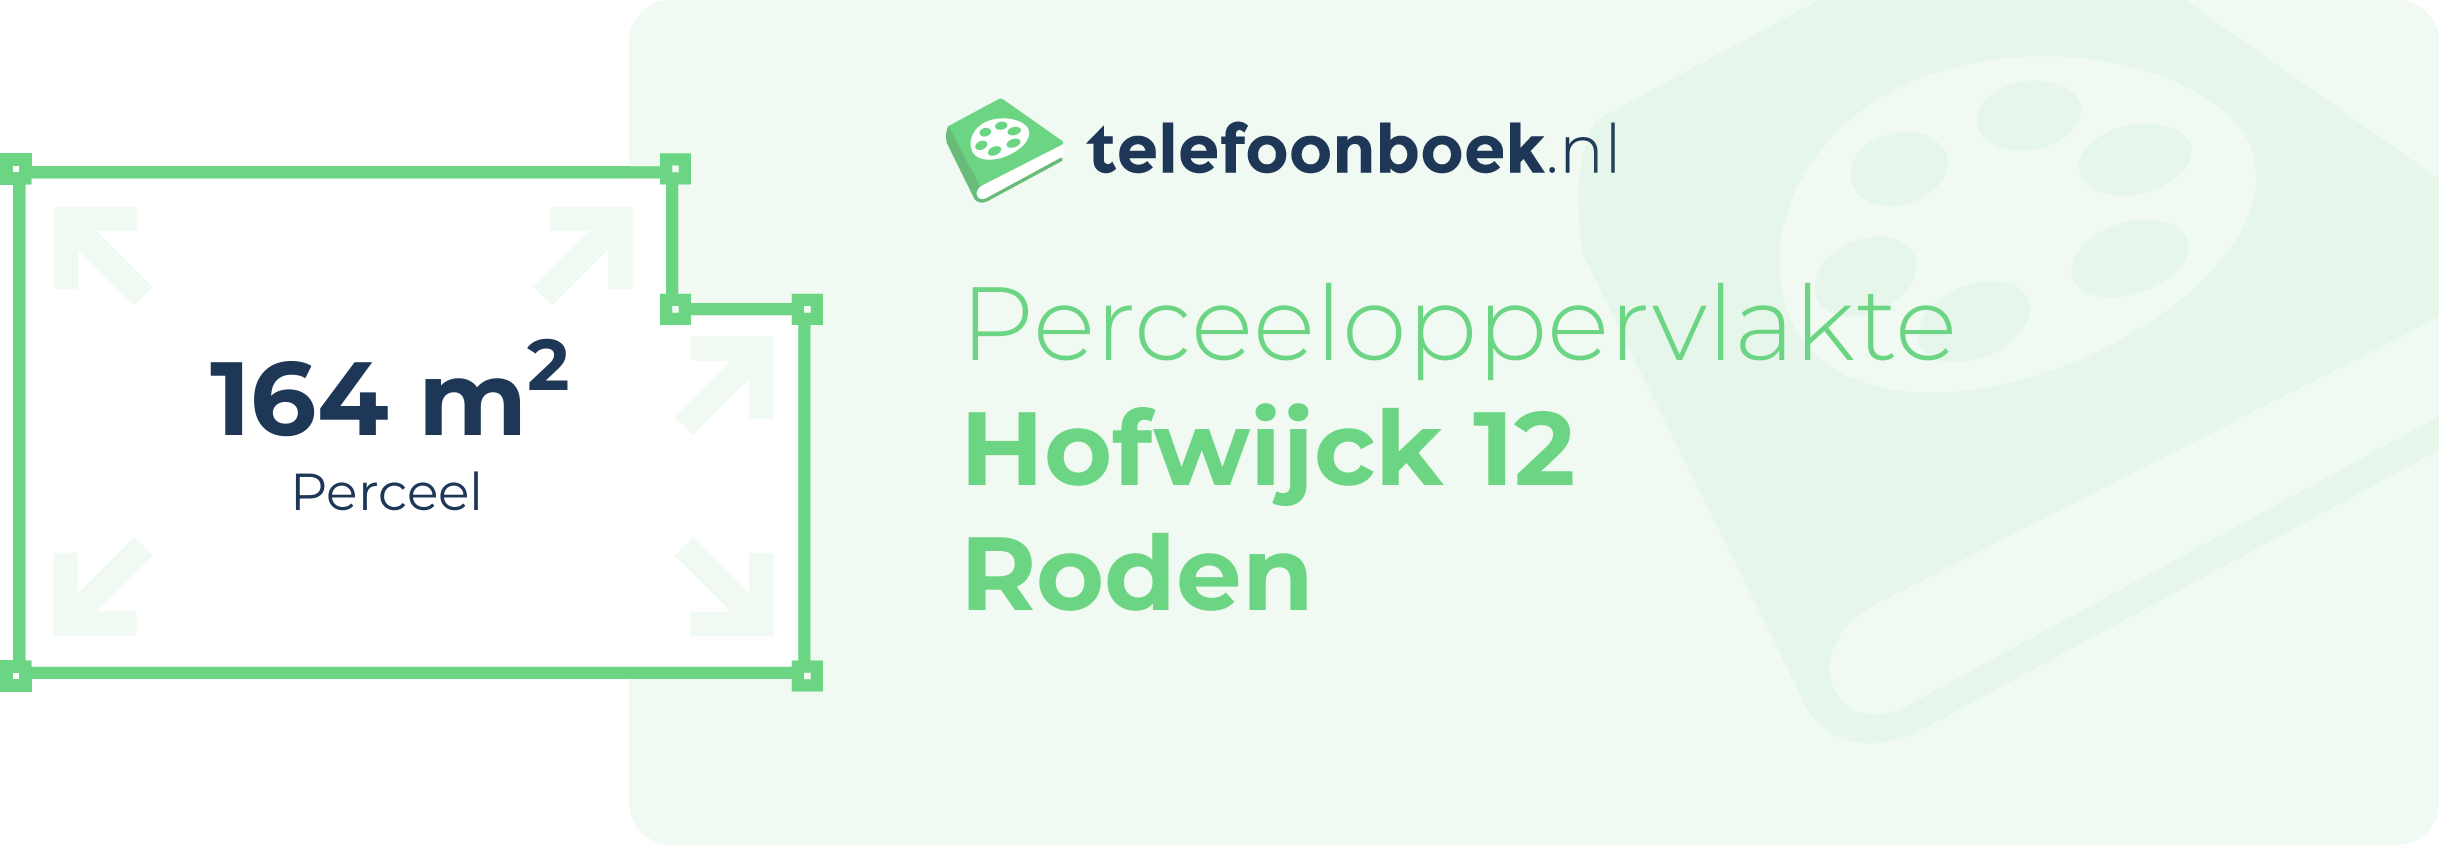 Perceeloppervlakte Hofwijck 12 Roden